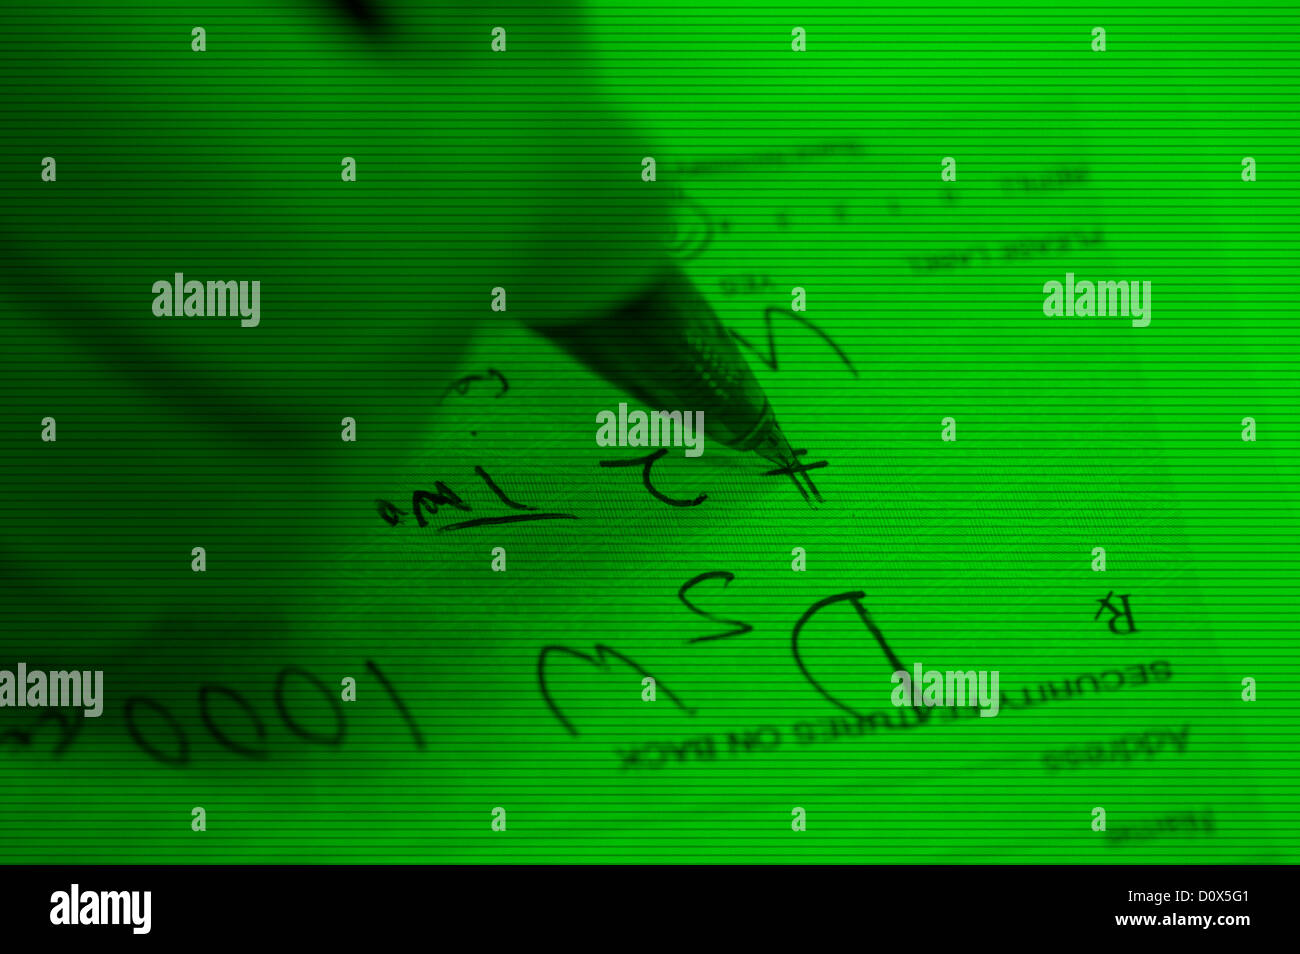 Imagen de visión nocturna closeup de escritura a mano de prescripción de drogas ilegales Foto de stock